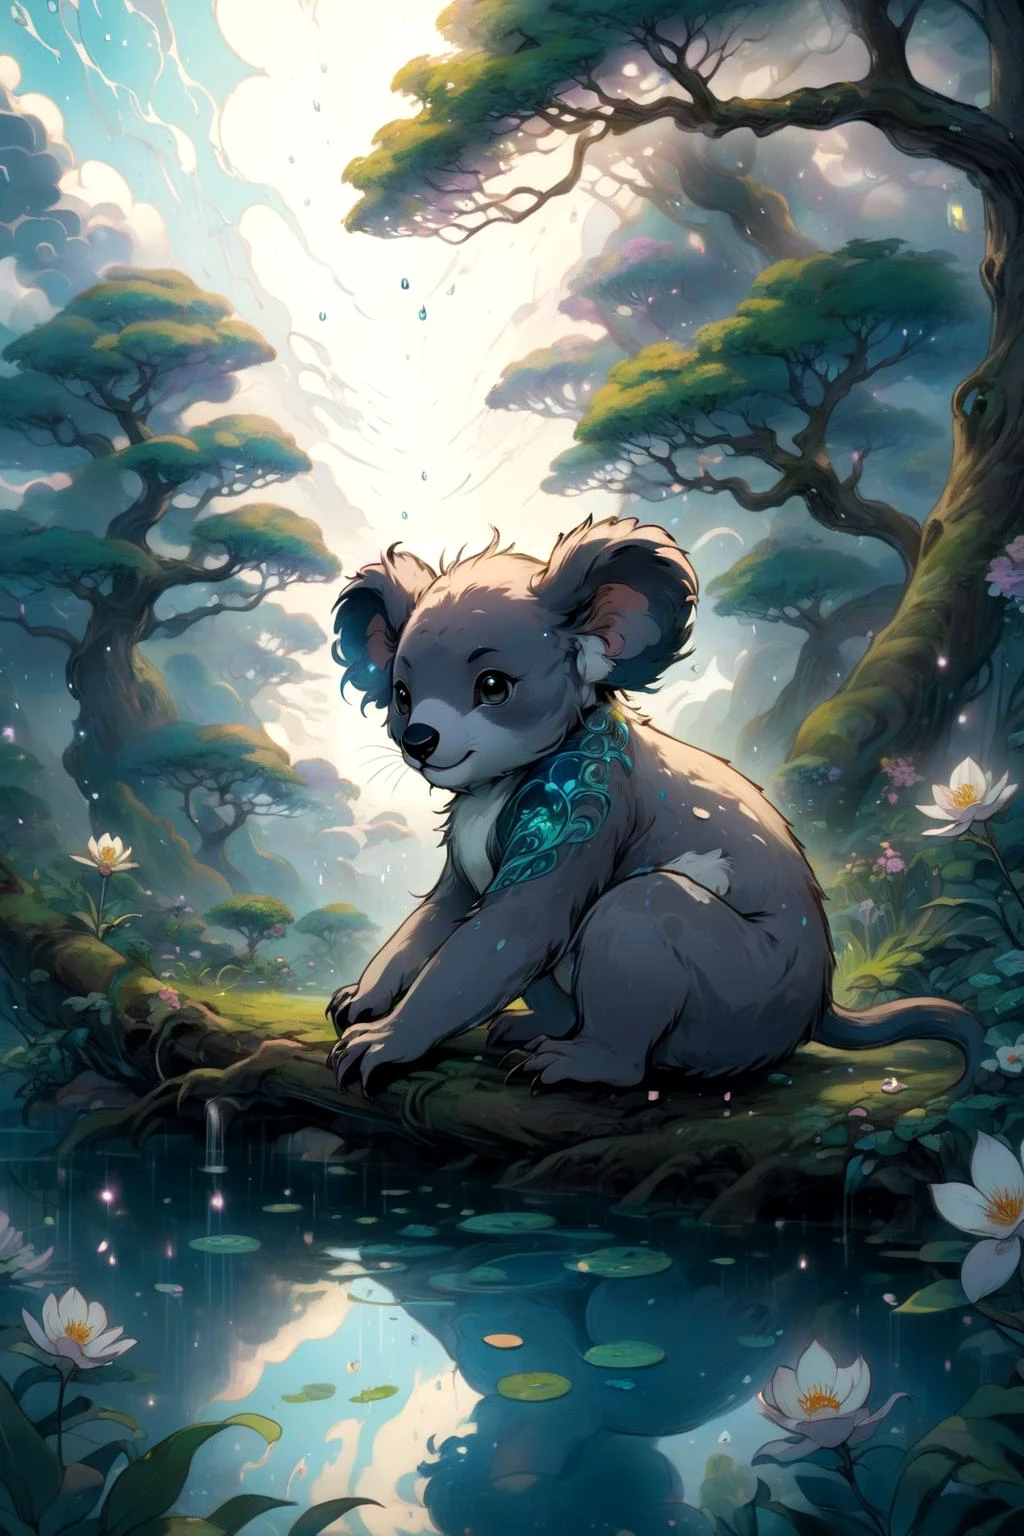 жуткий, коала, В царстве волшебного спокойствия, цветет сад спокойствия, его дзен-красота, вызывающая чувство внутреннего покоя, Преломляясь и рассеиваясь каплями дождя, состоящими из мифических облаков 